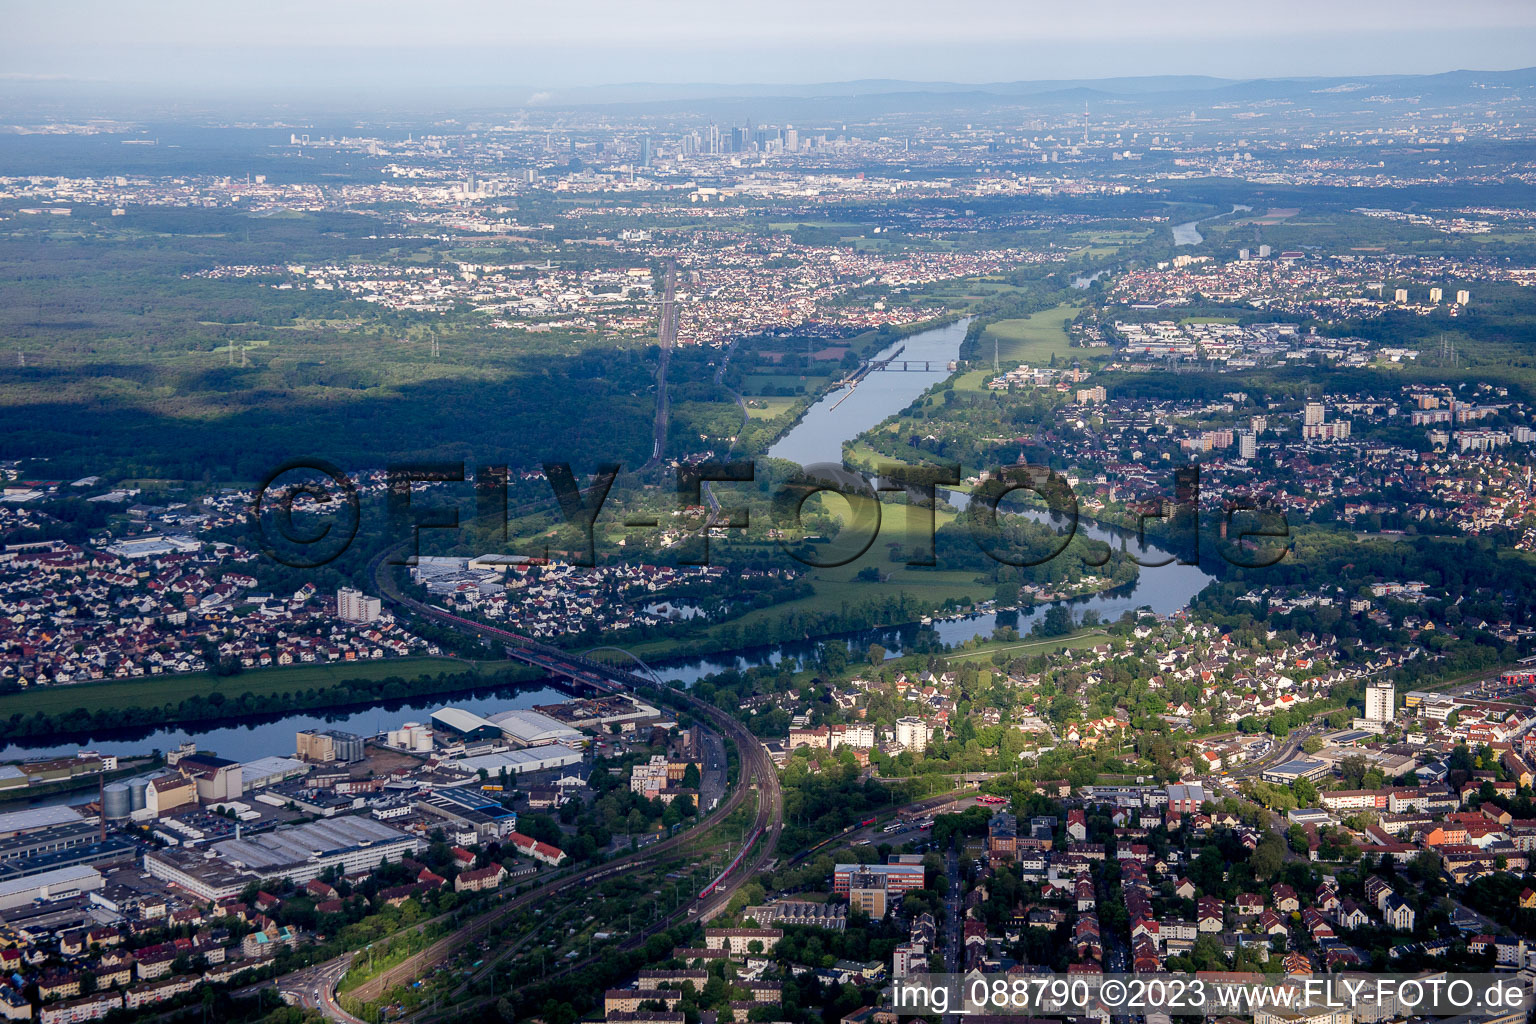 Luftbild von Hanau im Bundesland Hessen, Deutschland